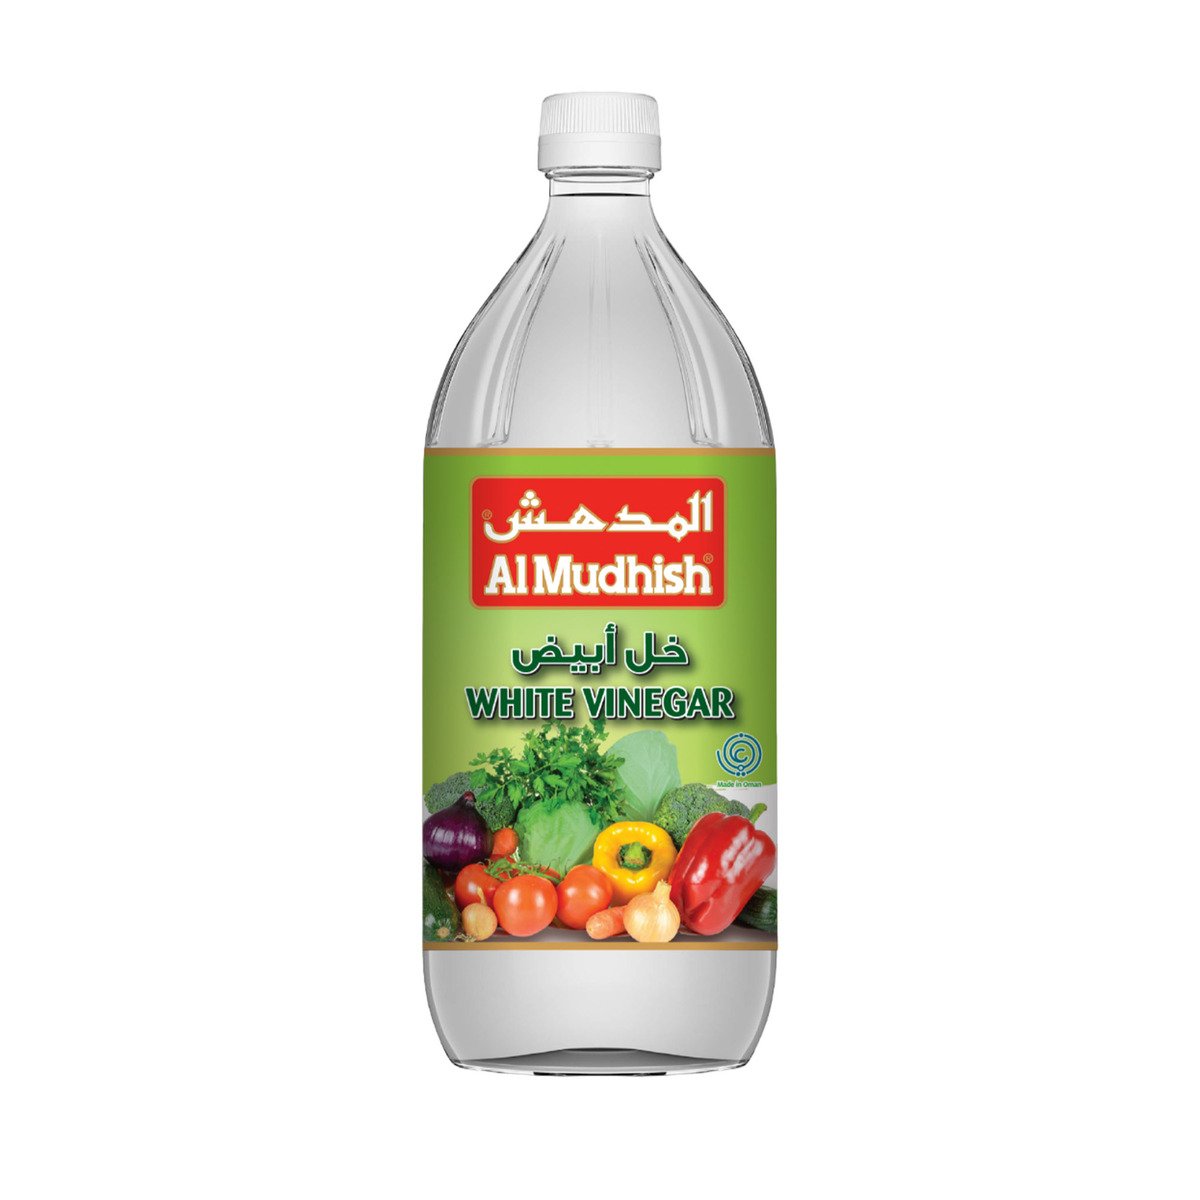 Al Mudhish White Vinegar 946 ml